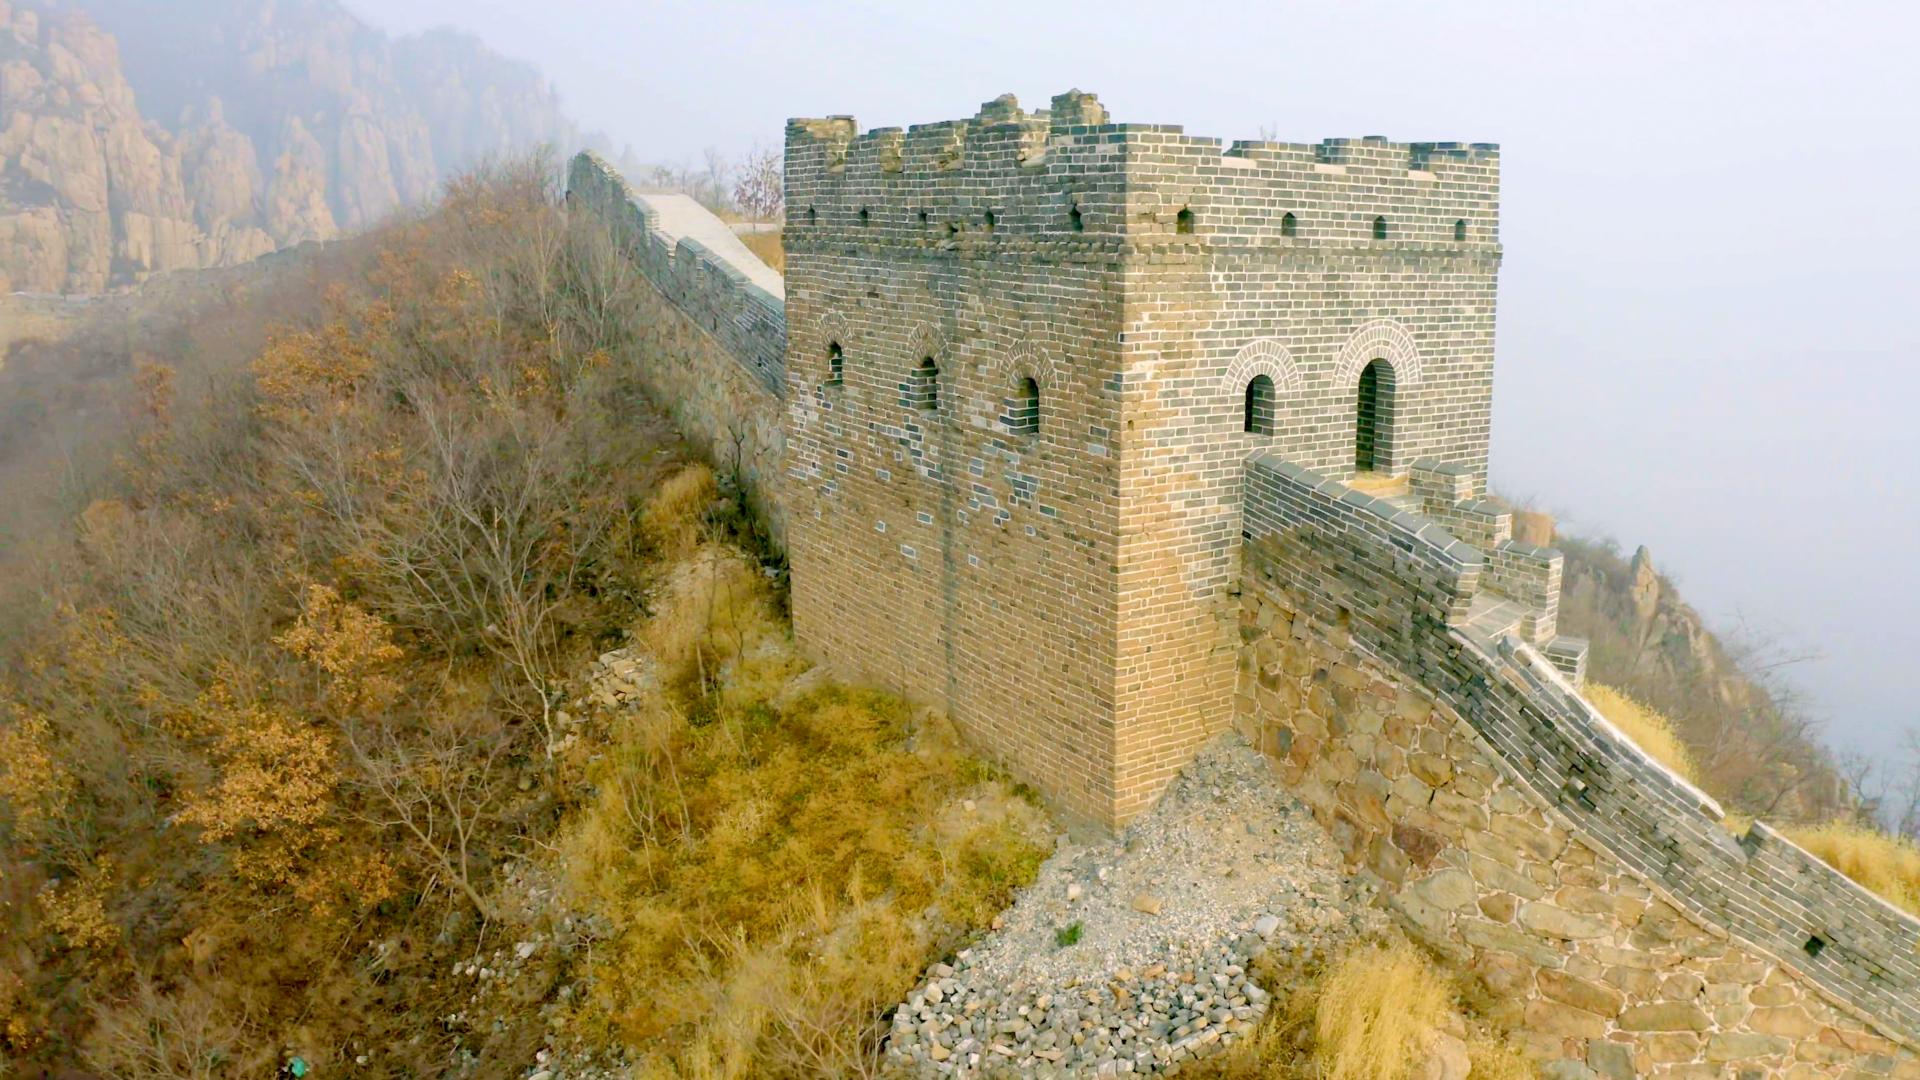 Tường thành Trung Hoa là một trong những công trình kiến ​​trúc độc đáo nhất trên thế giới. Với những bức tường và thành lũy cao tường vững chắc, thành Trung Hoa đã bảo vệ quốc gia khỏi kẻ thù trong hàng trăm năm. Điều này chắc chắn sẽ cung cấp cho bạn một kể chuyện thú vị xoay quanh lịch sử phong phú của Trung Quốc.